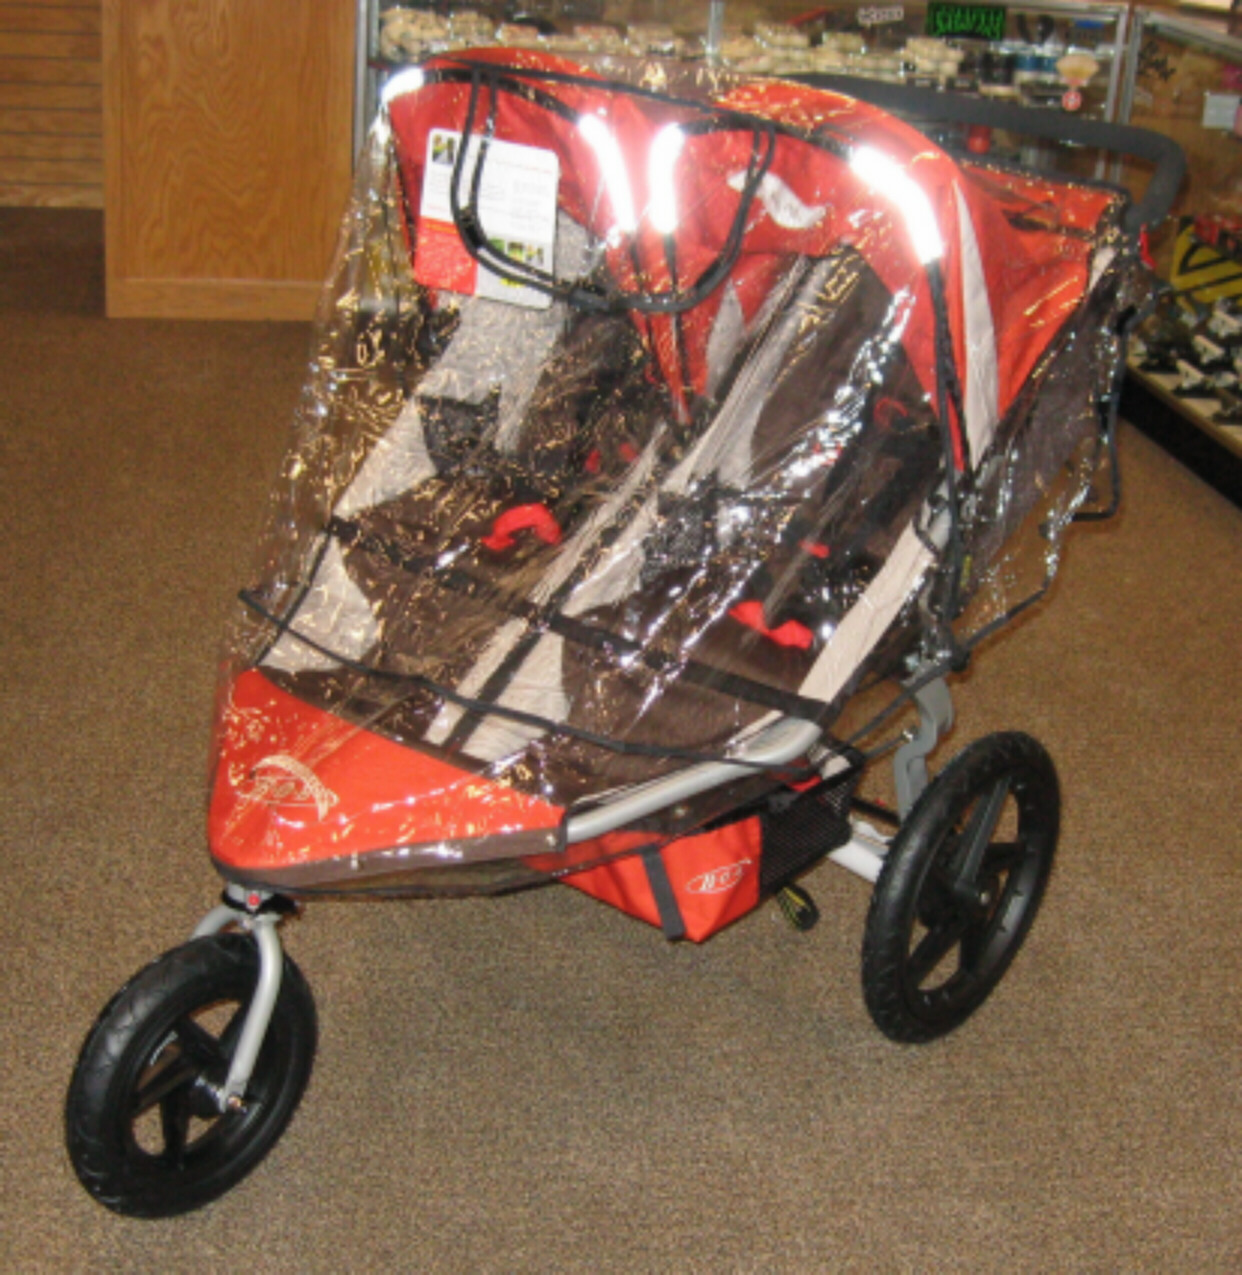 2011 bob double stroller